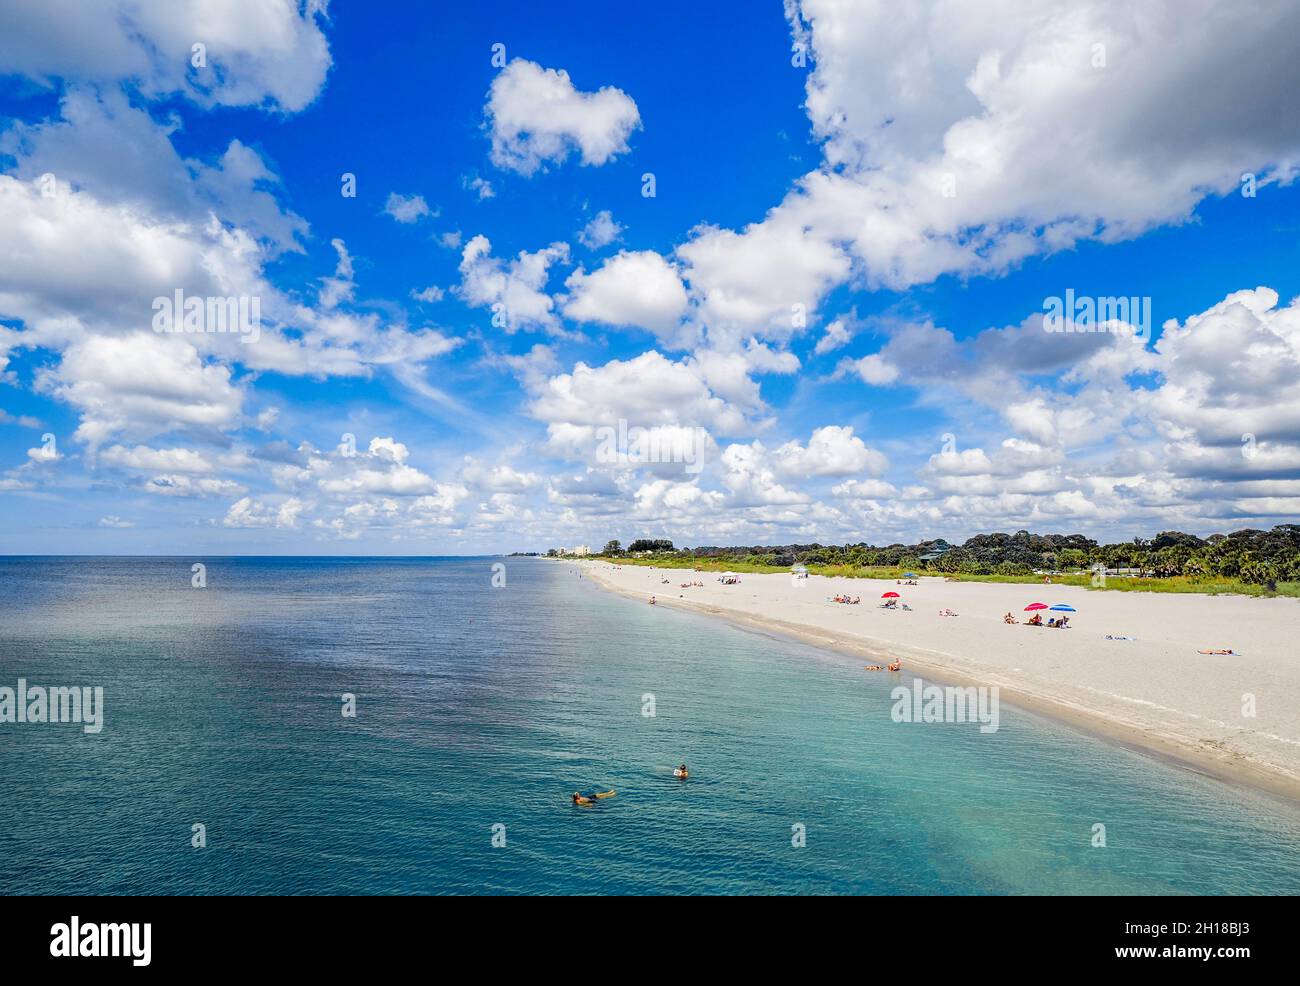 Spiaggia di Venezia sul Golfo del Messico dal molo di Venezia in una giornata estiva con cielo blu e nuvole bianche a Venezia Florida USA Foto Stock